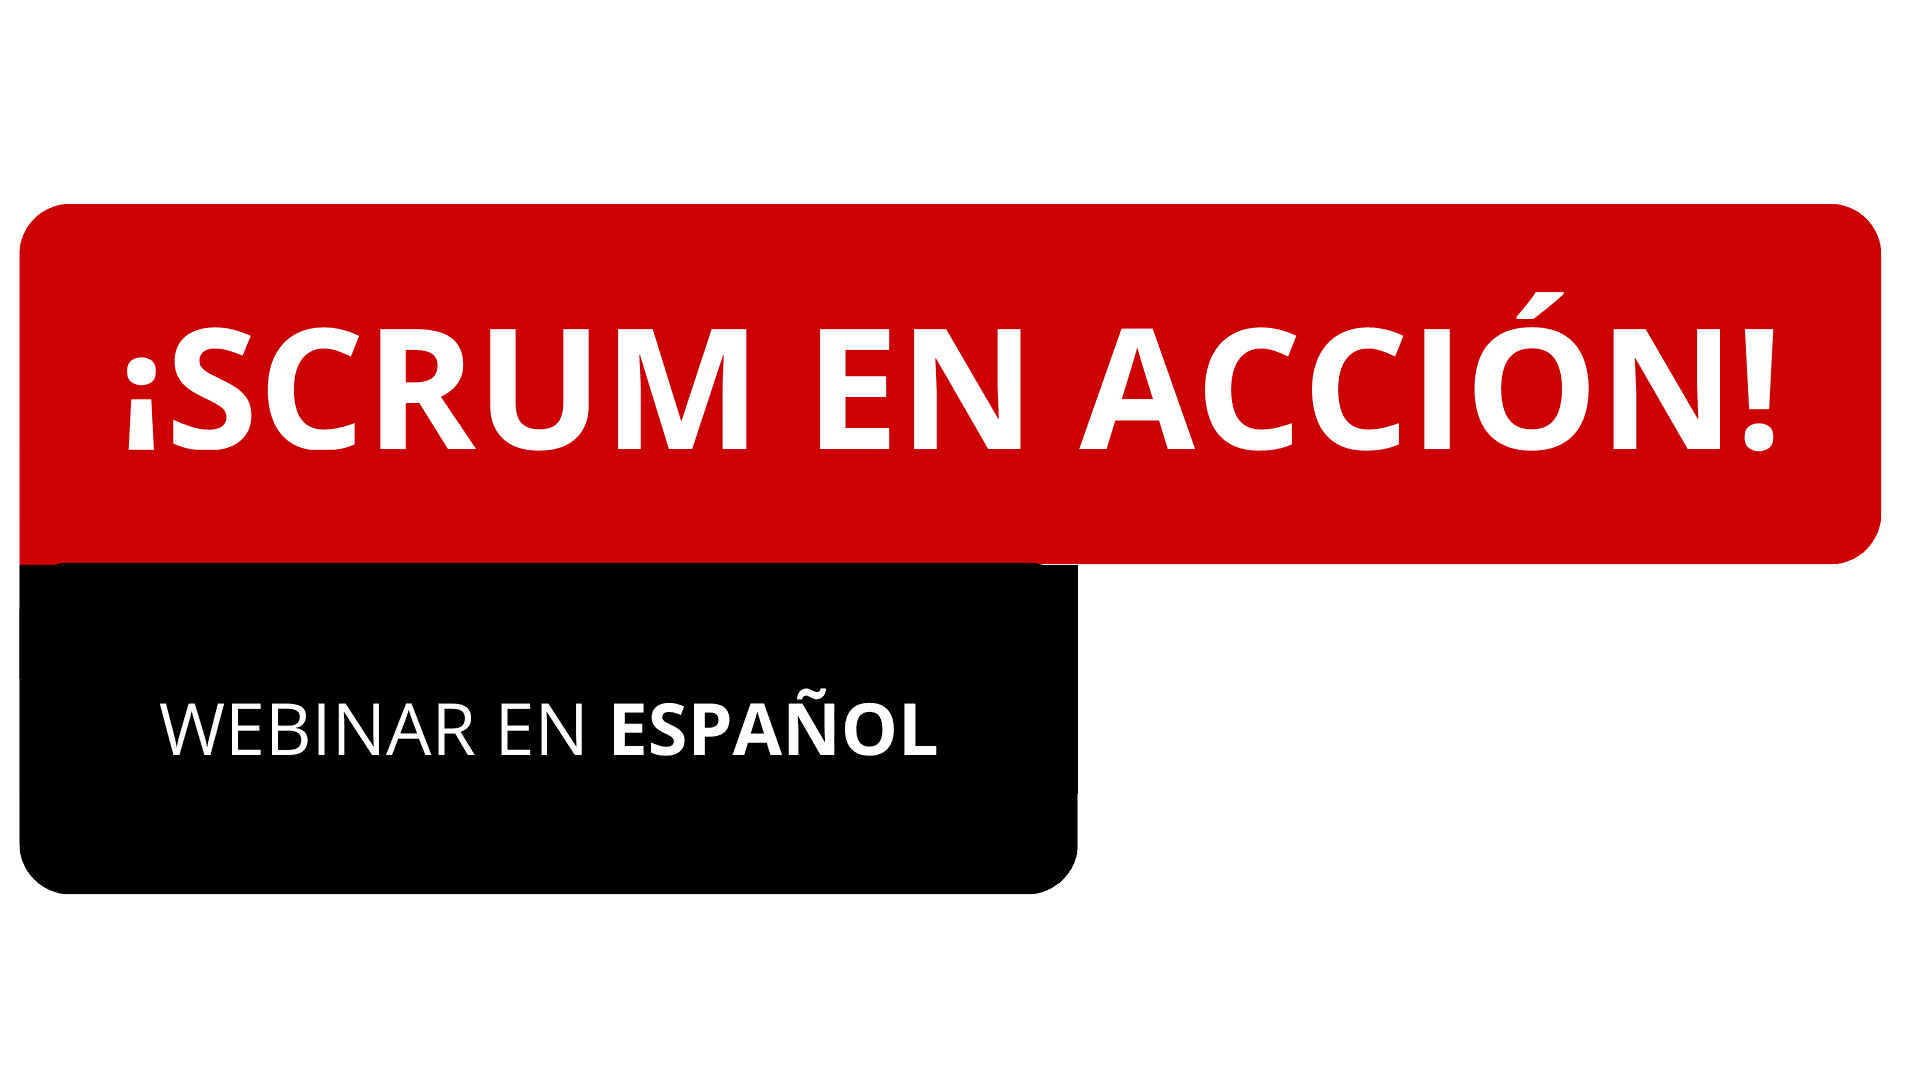 Scrum En Accion: Free Webinar en Espanol